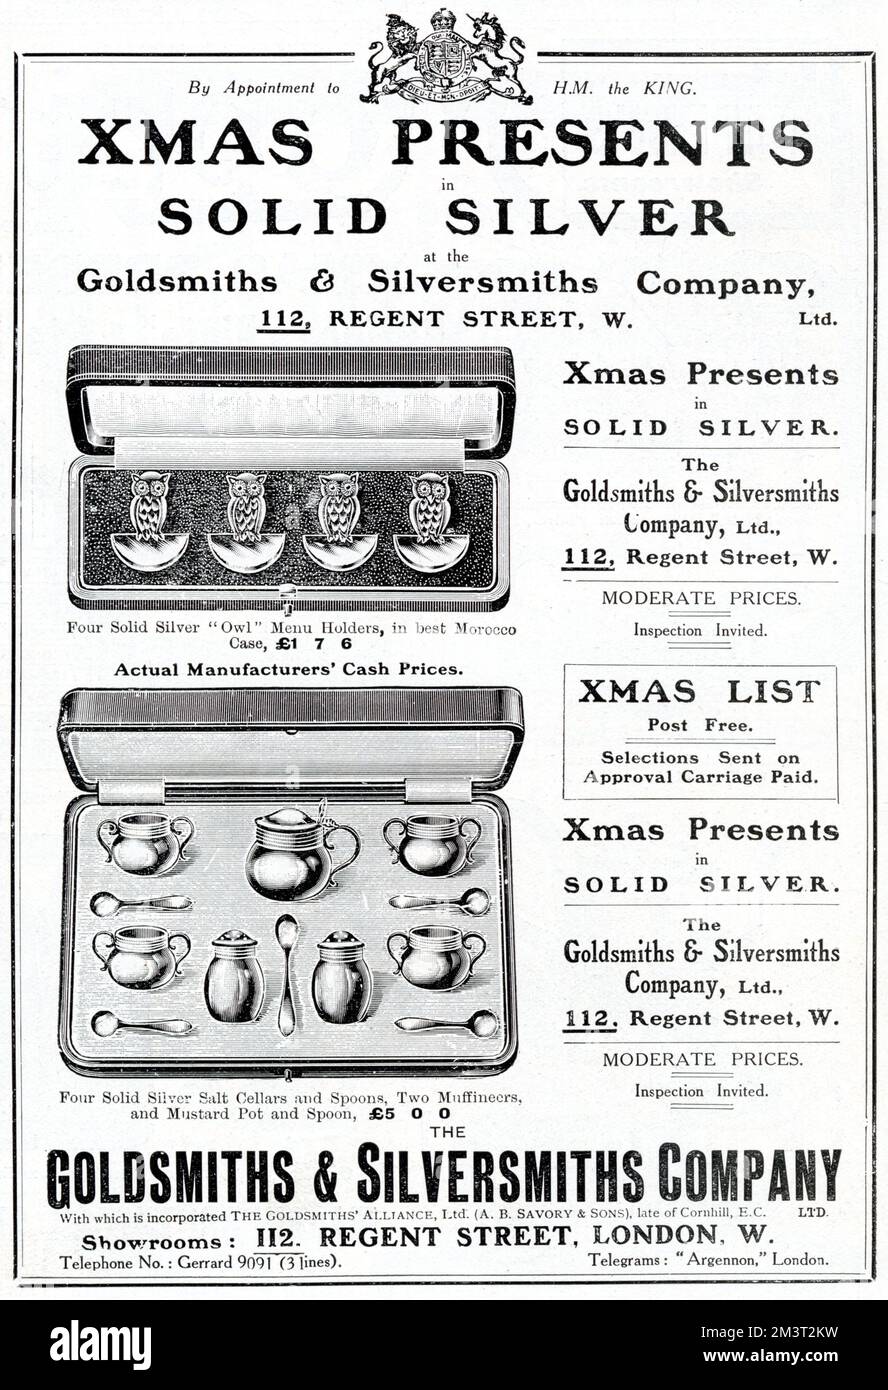 Die Anzeige für Weihnachten präsentiert sich in Silber bei der Golden Smiths & Silversmiths Company, 112 Regent Street, London. Vier Speisekarten aus massiven Silbereulen, Salzkeller und Löffel, zwei Muffiners sowie Senftopf und Löffel. Stockfoto